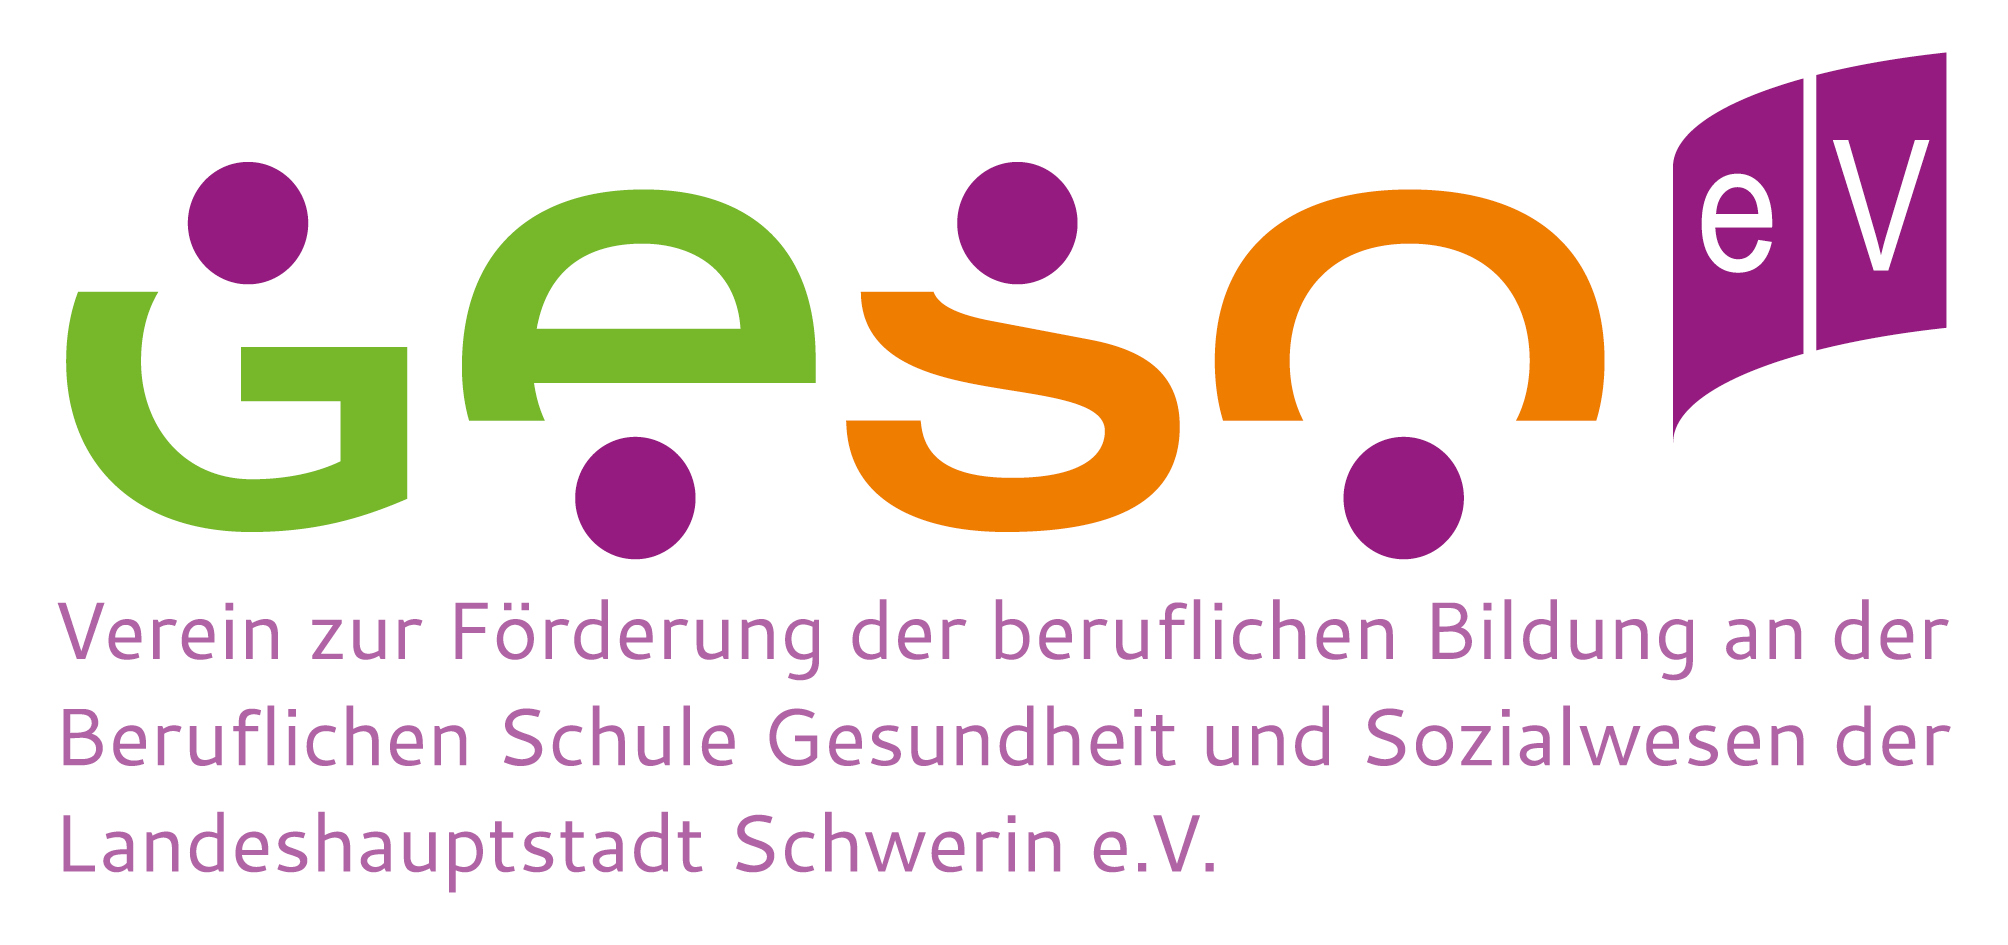 Logo_GESO_e.v_RGB